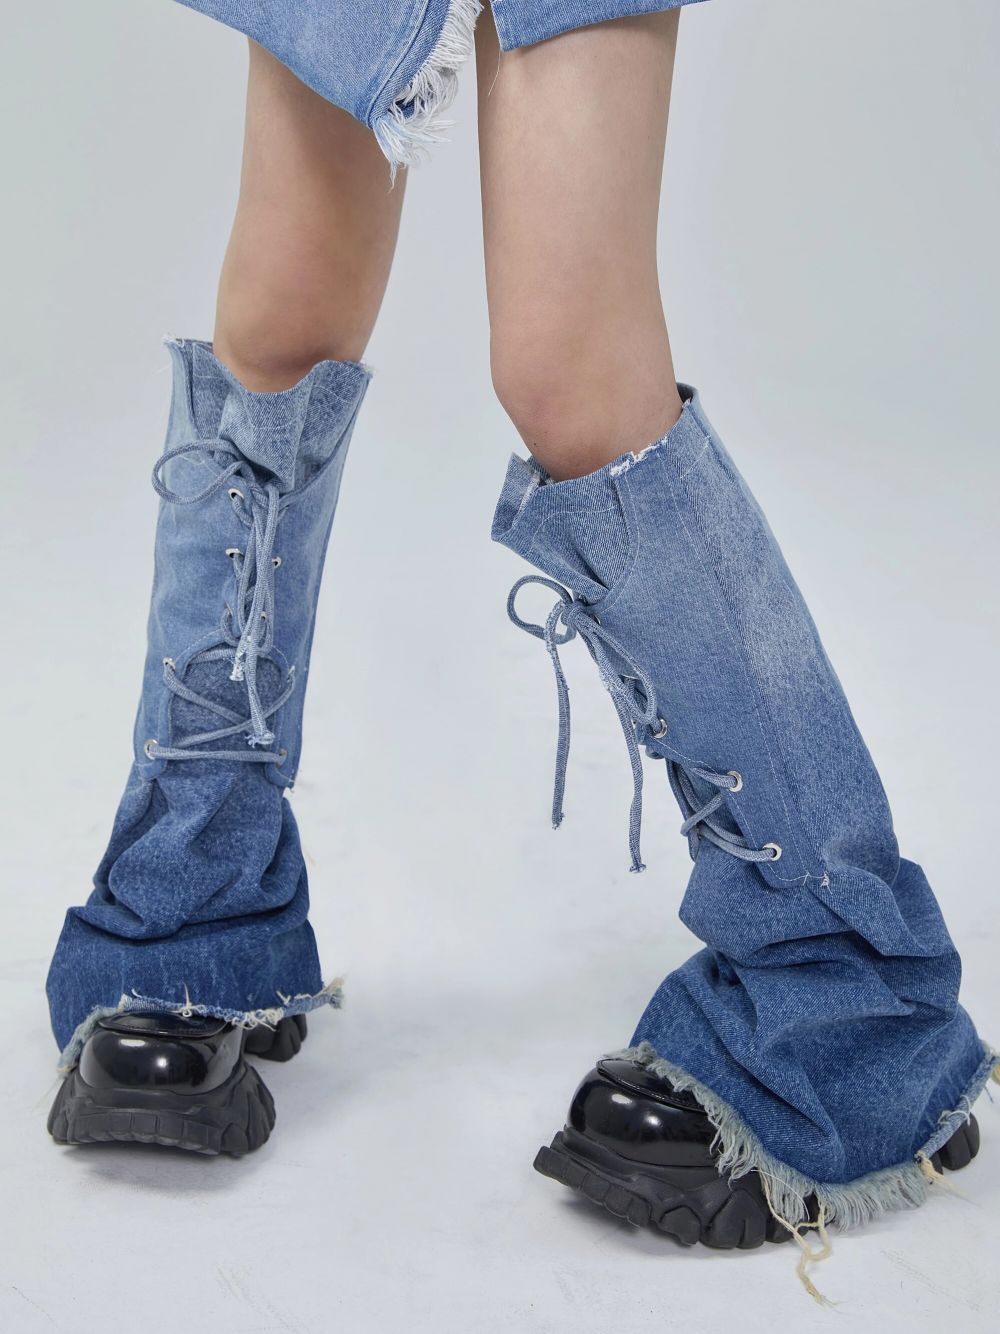 Fashion | Aceste accesorii vestimentare au împărțit internetul în două: "Arată stupid!" vs. "Sunt utile, încălzesc picioarele!"  _5